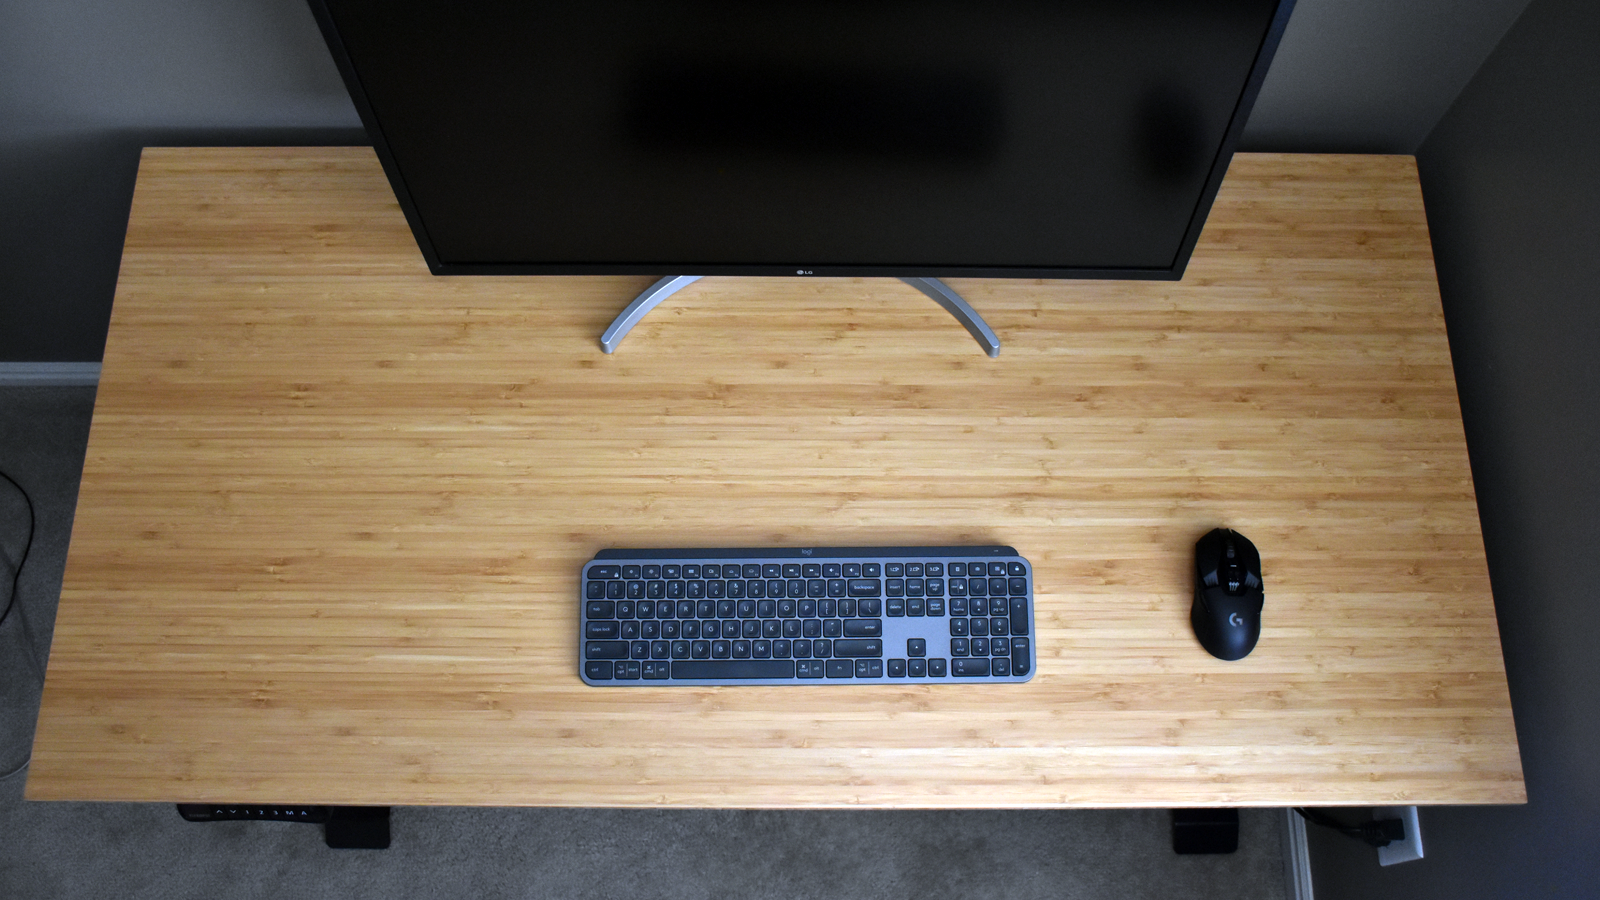 キーボード、モニター、マウスだけを置いた机の上面図